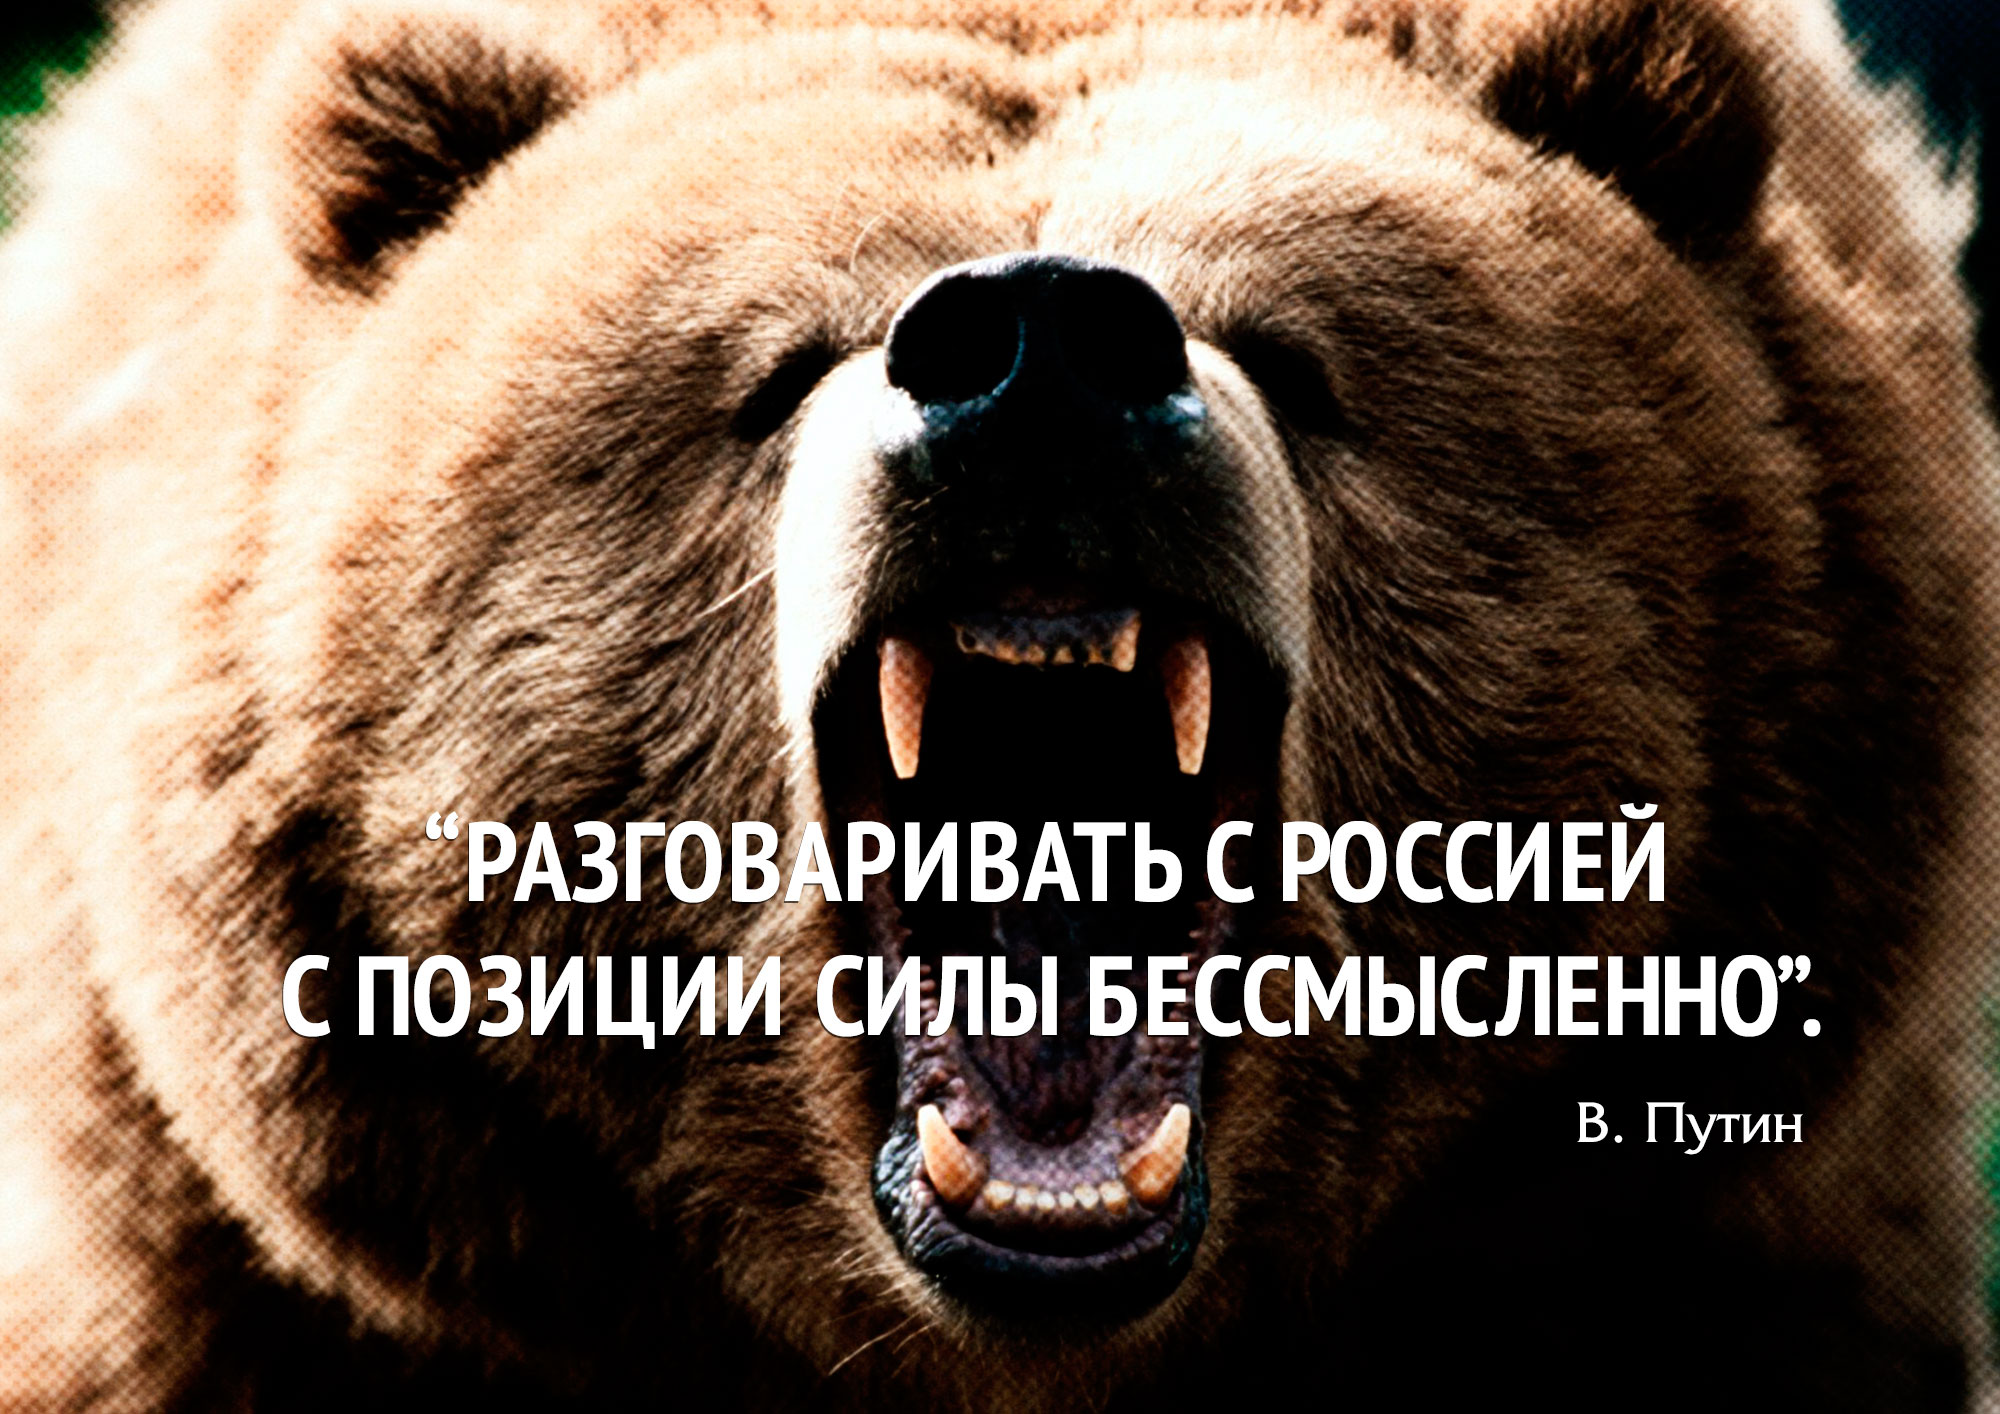 «Разговаривать с Россией с позиции силы бессмысленно».